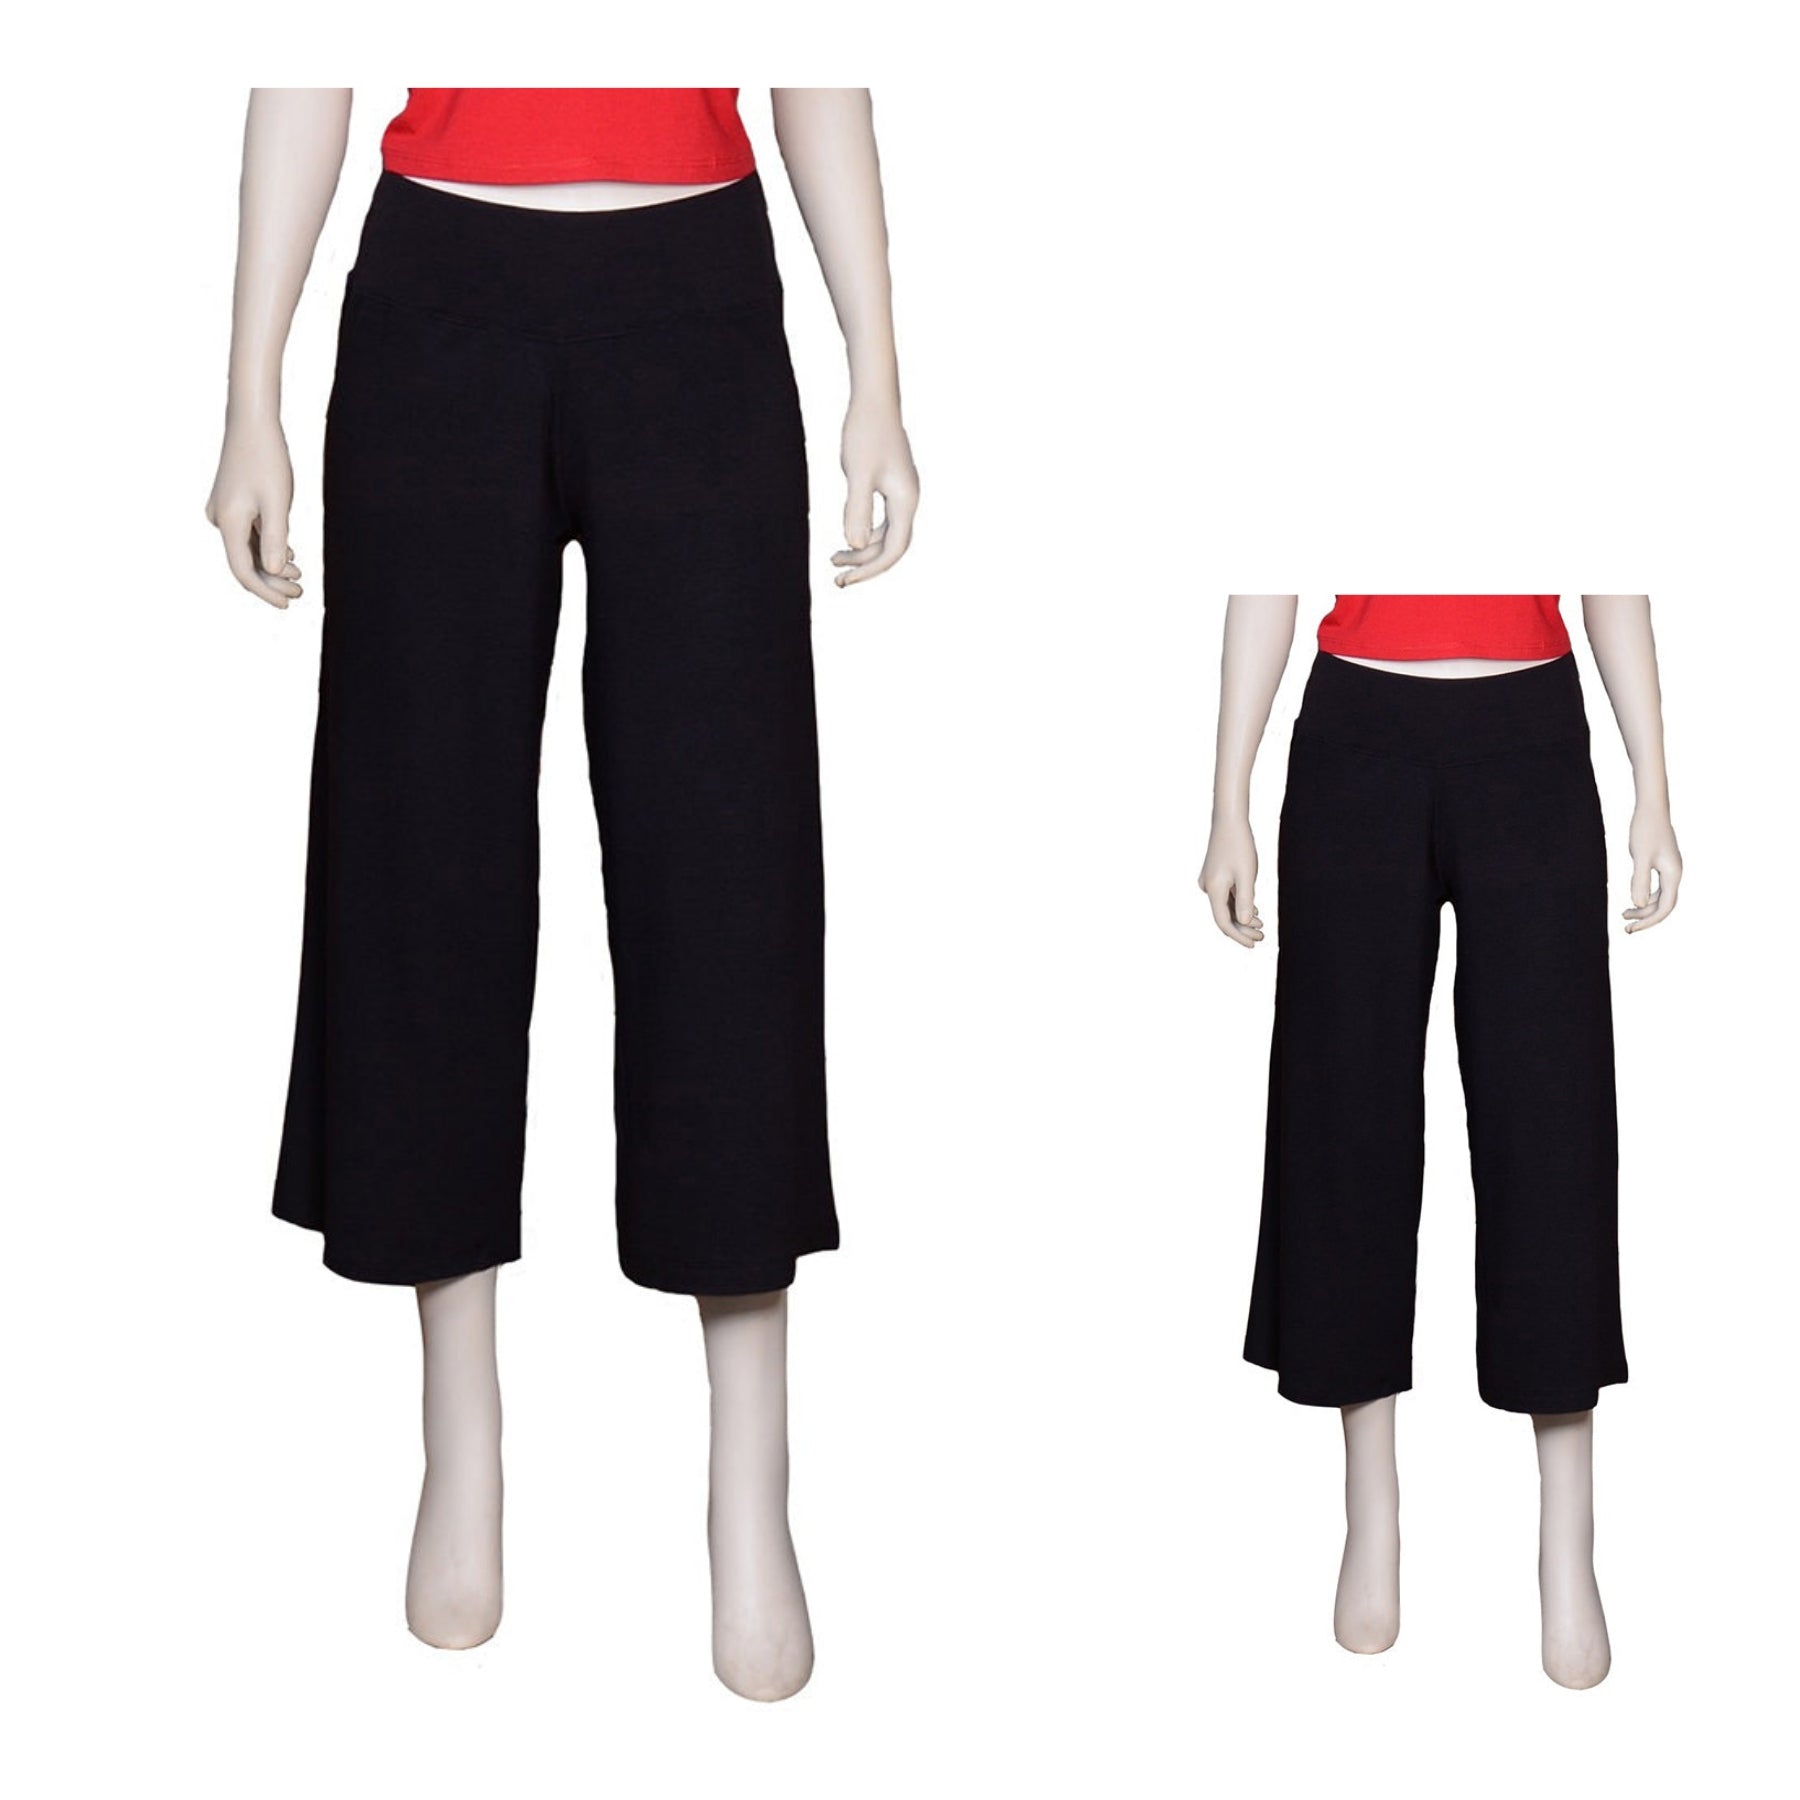 Bamboo yoga pants with folding waist – MY MUJO